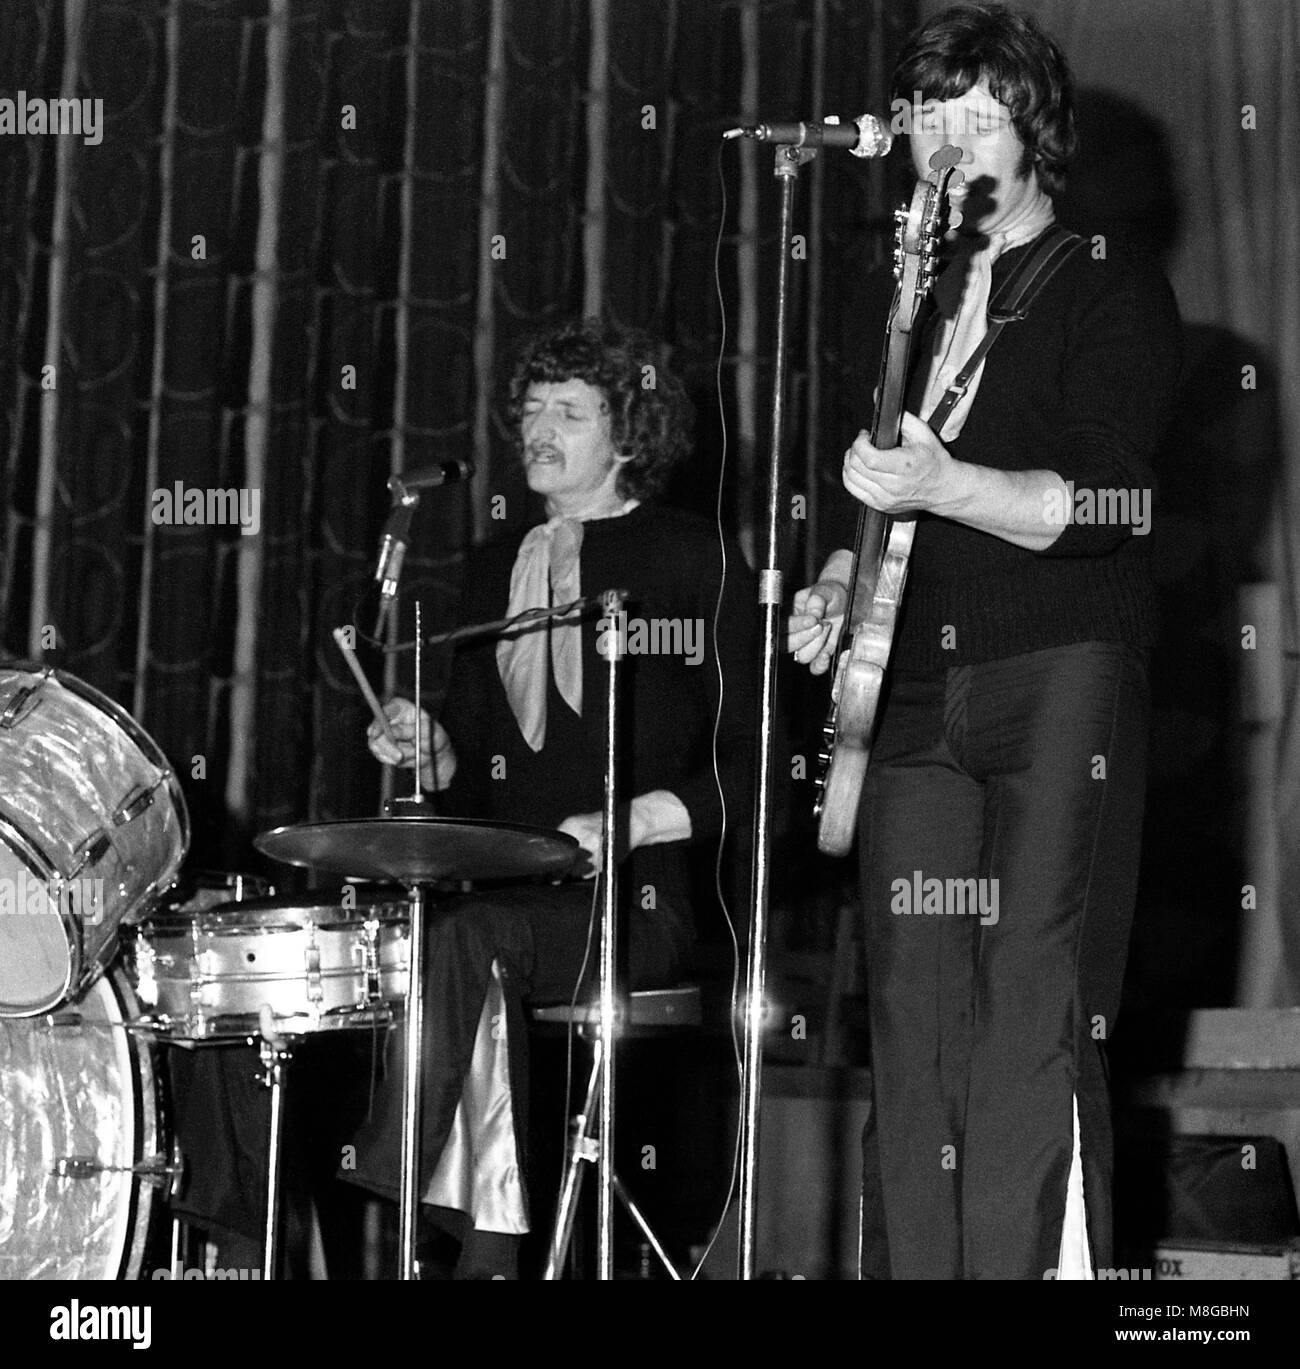 Orange Bicycle, una band pop psichedelica britannica, si esibir sabato 1° marzo 1969 presso la Anson Rooms dell’Unione studentesca dell’Università di Bristol nell’ambito degli eventi RAG di quell’anno. Da sinistra: Wil Malone e John Bachini (noto anche come John Baccini). Foto Stock